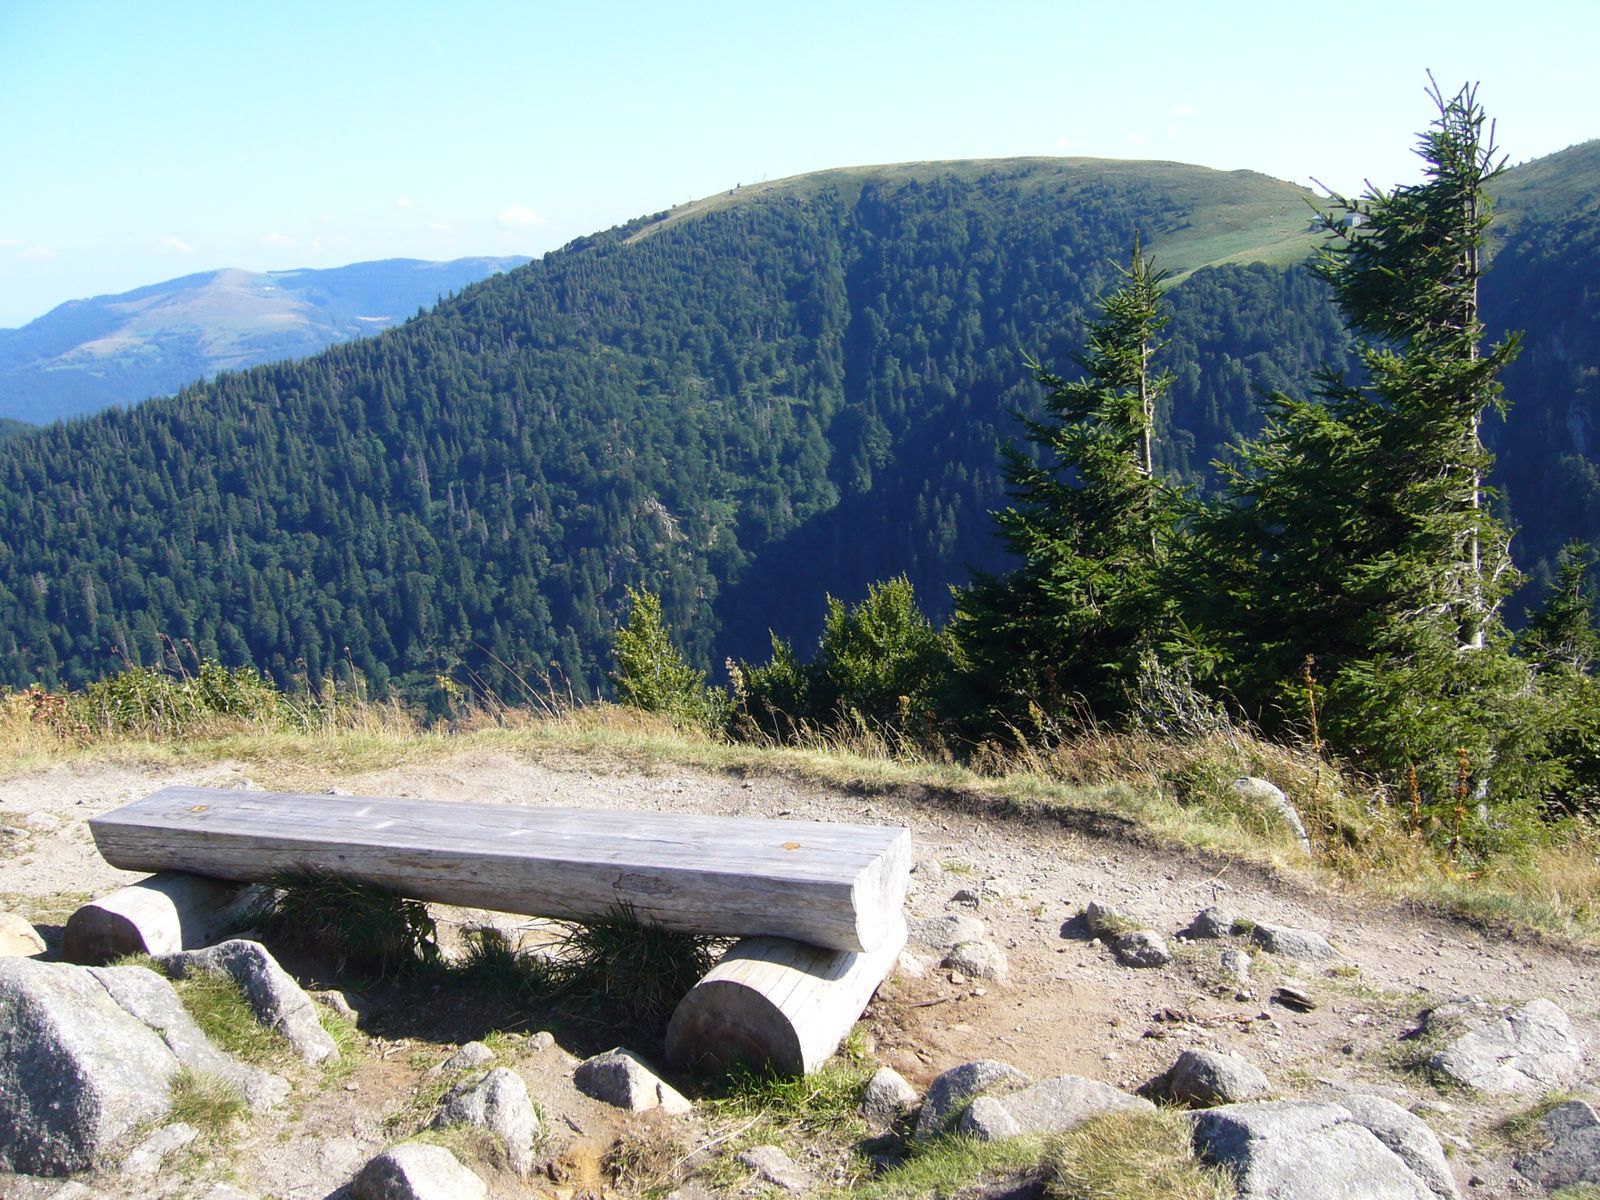 randonnées aux quatre saisons dans les Vosges
photos philae (jo)